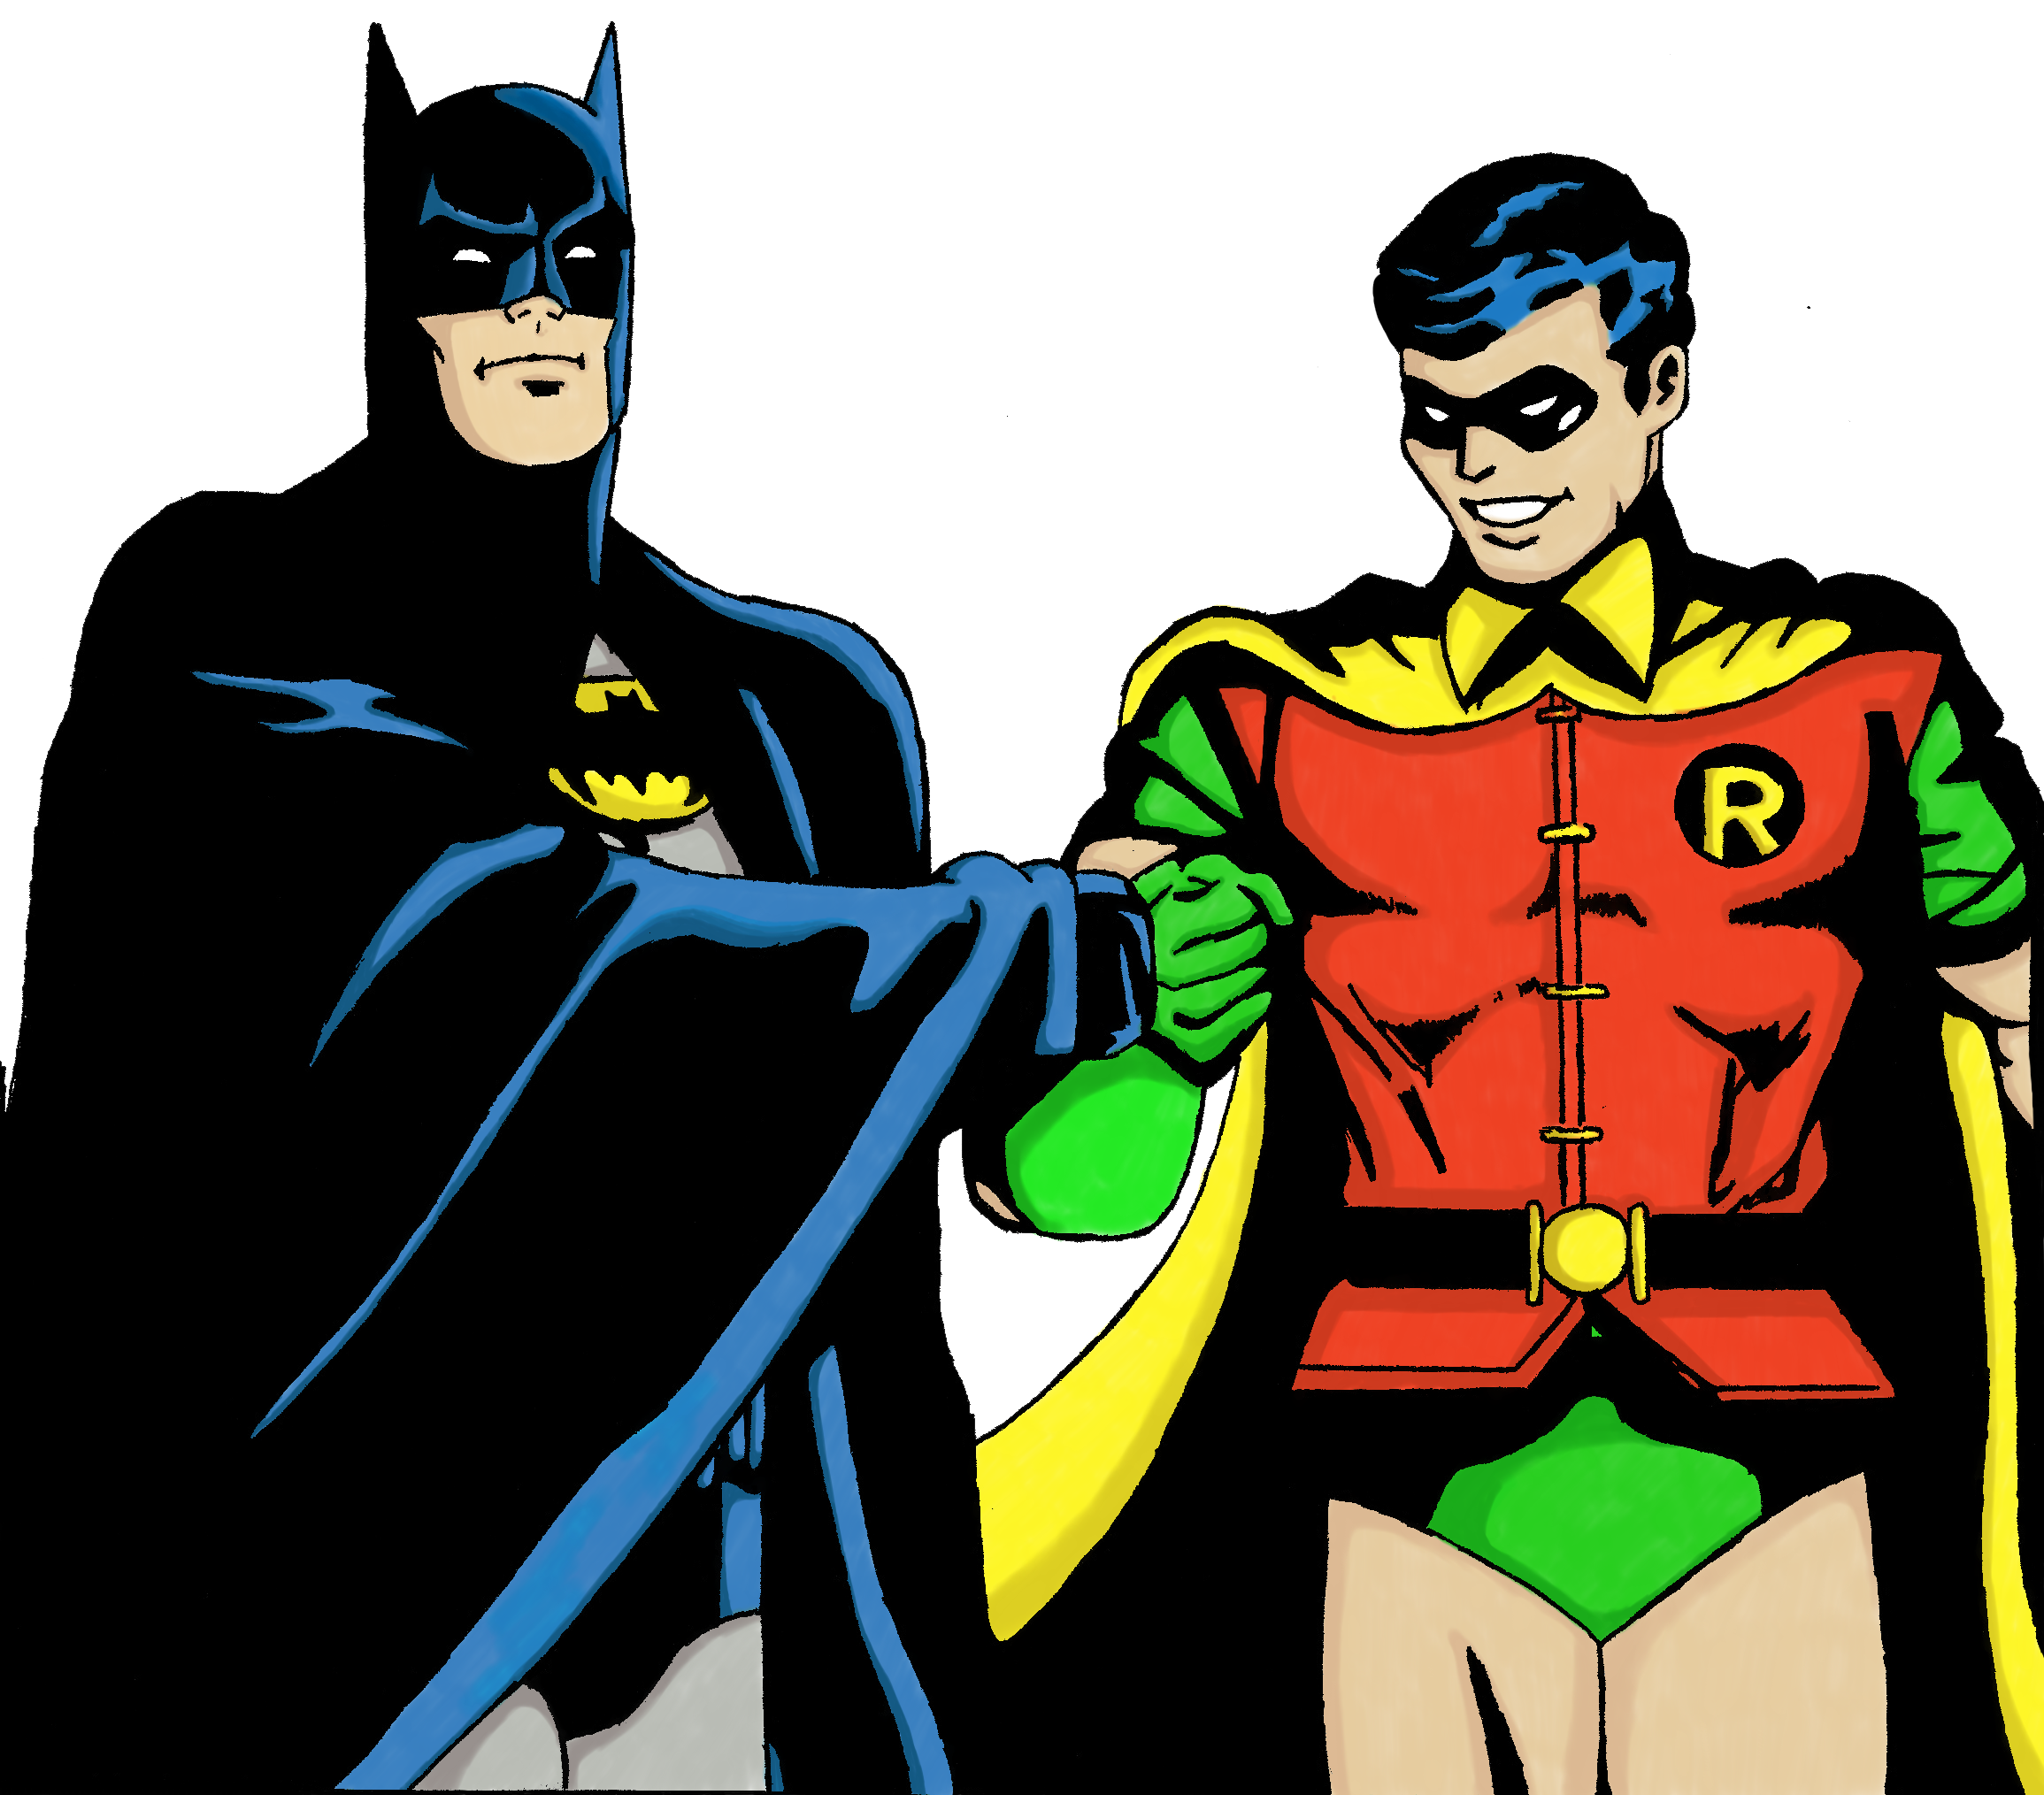 Batman And Robin PNG Image